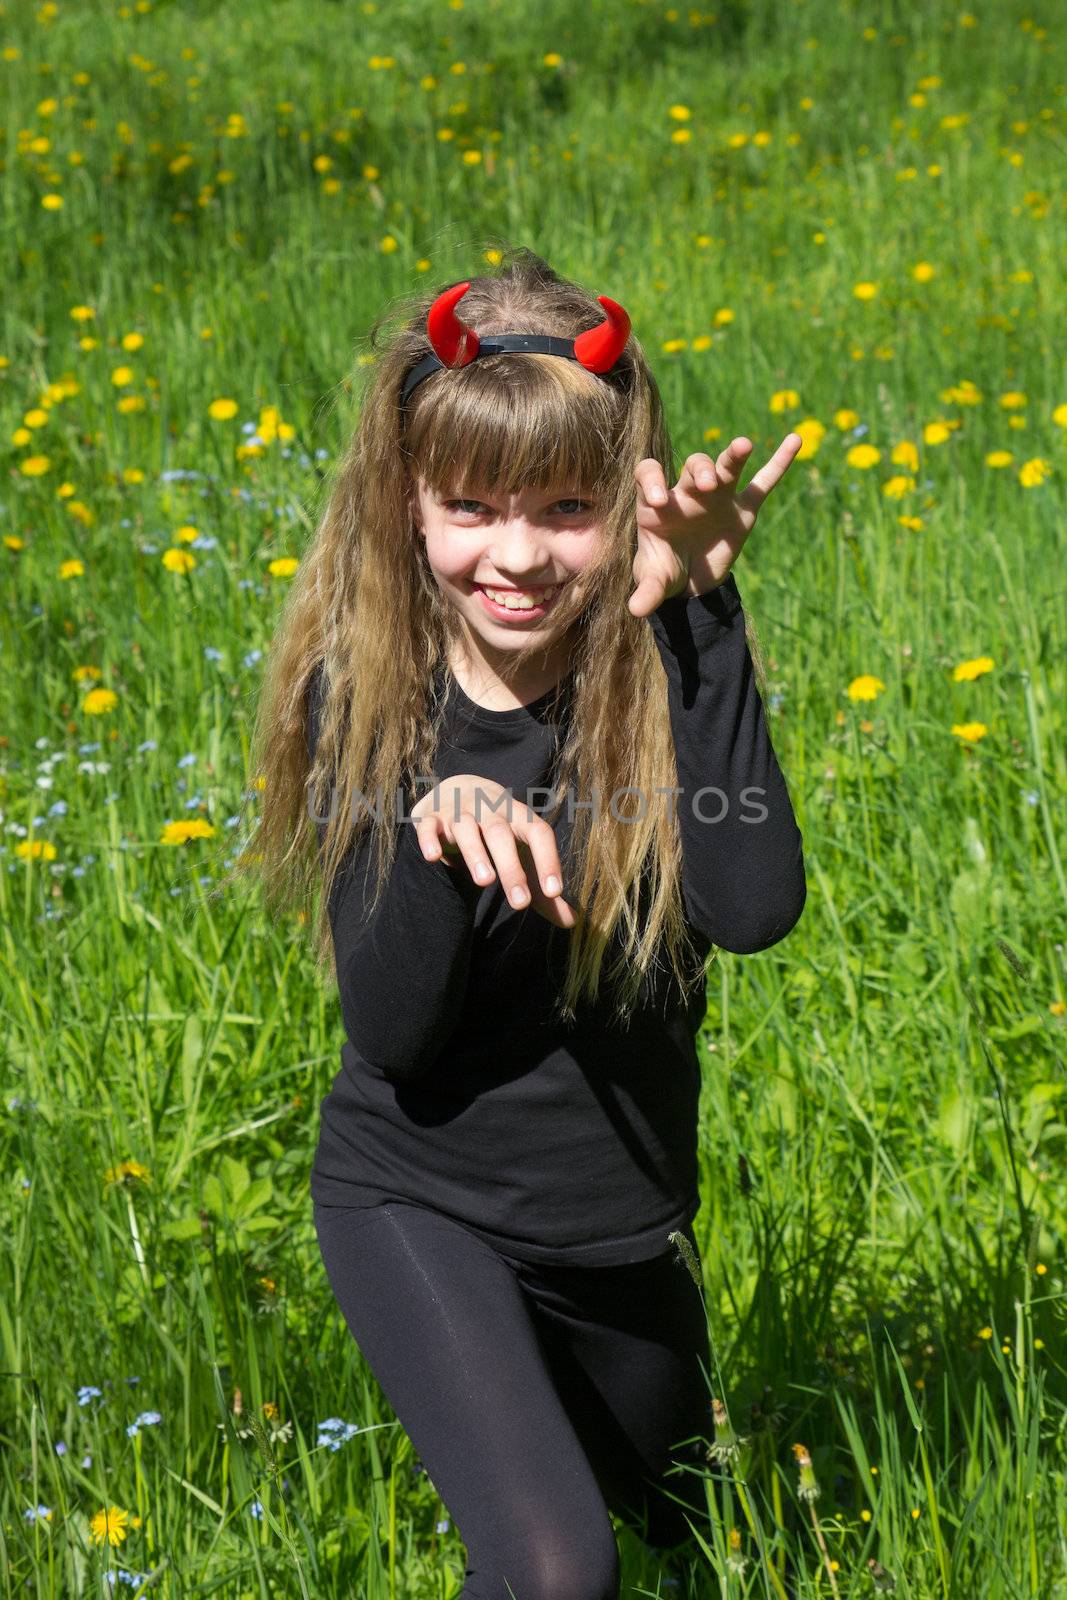 little devil girl in a green dandelion field